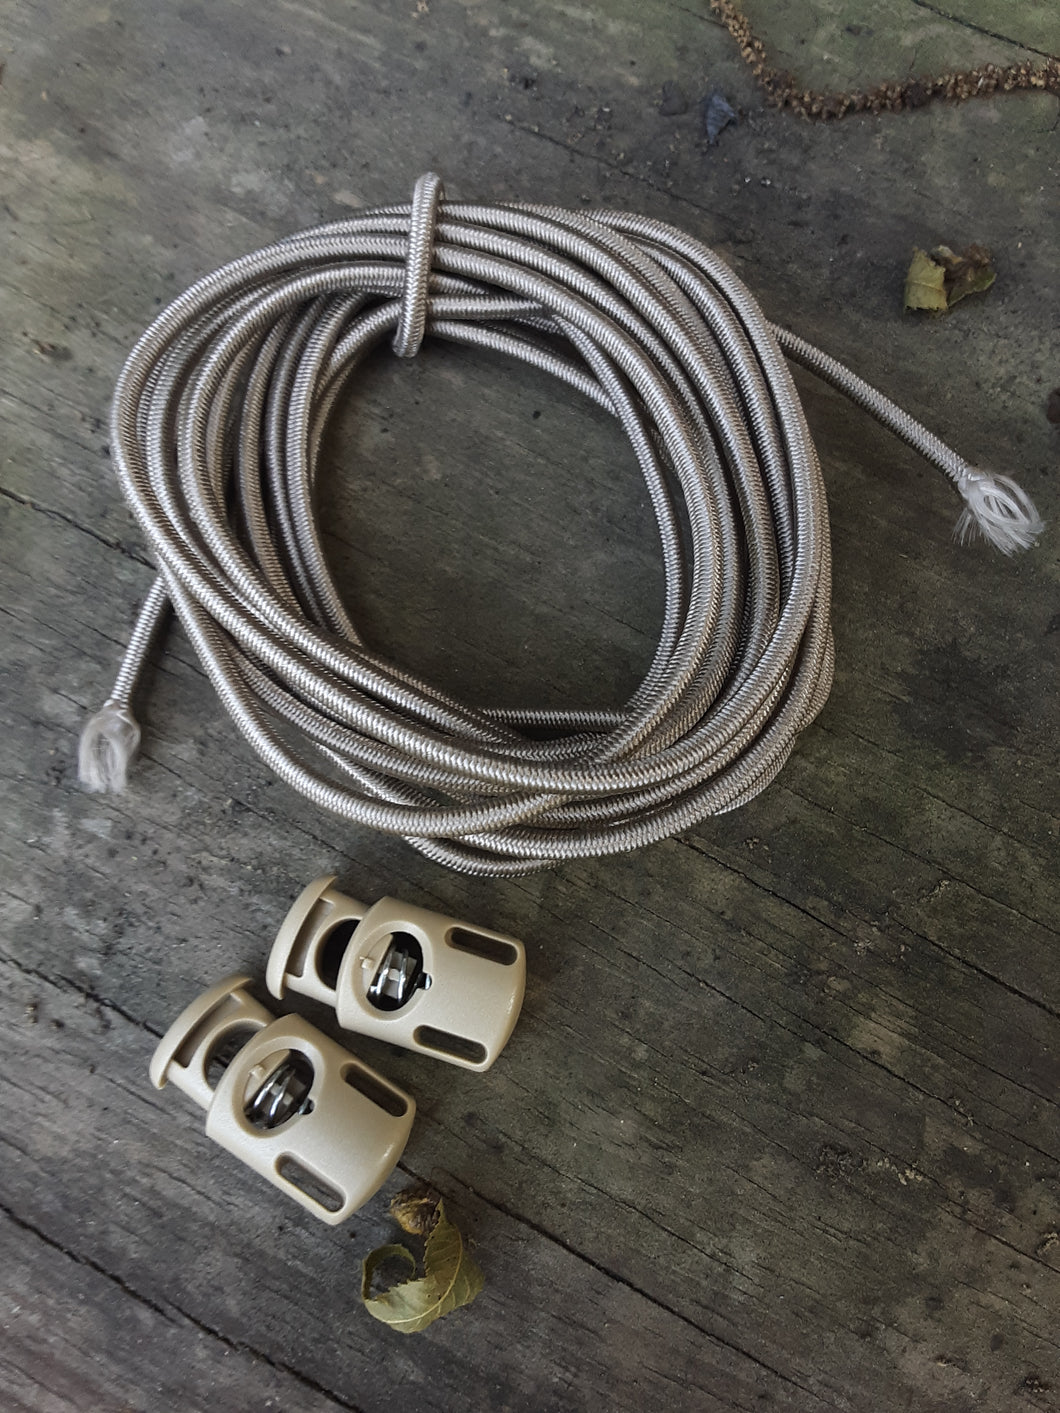 DIY Shock cord kit